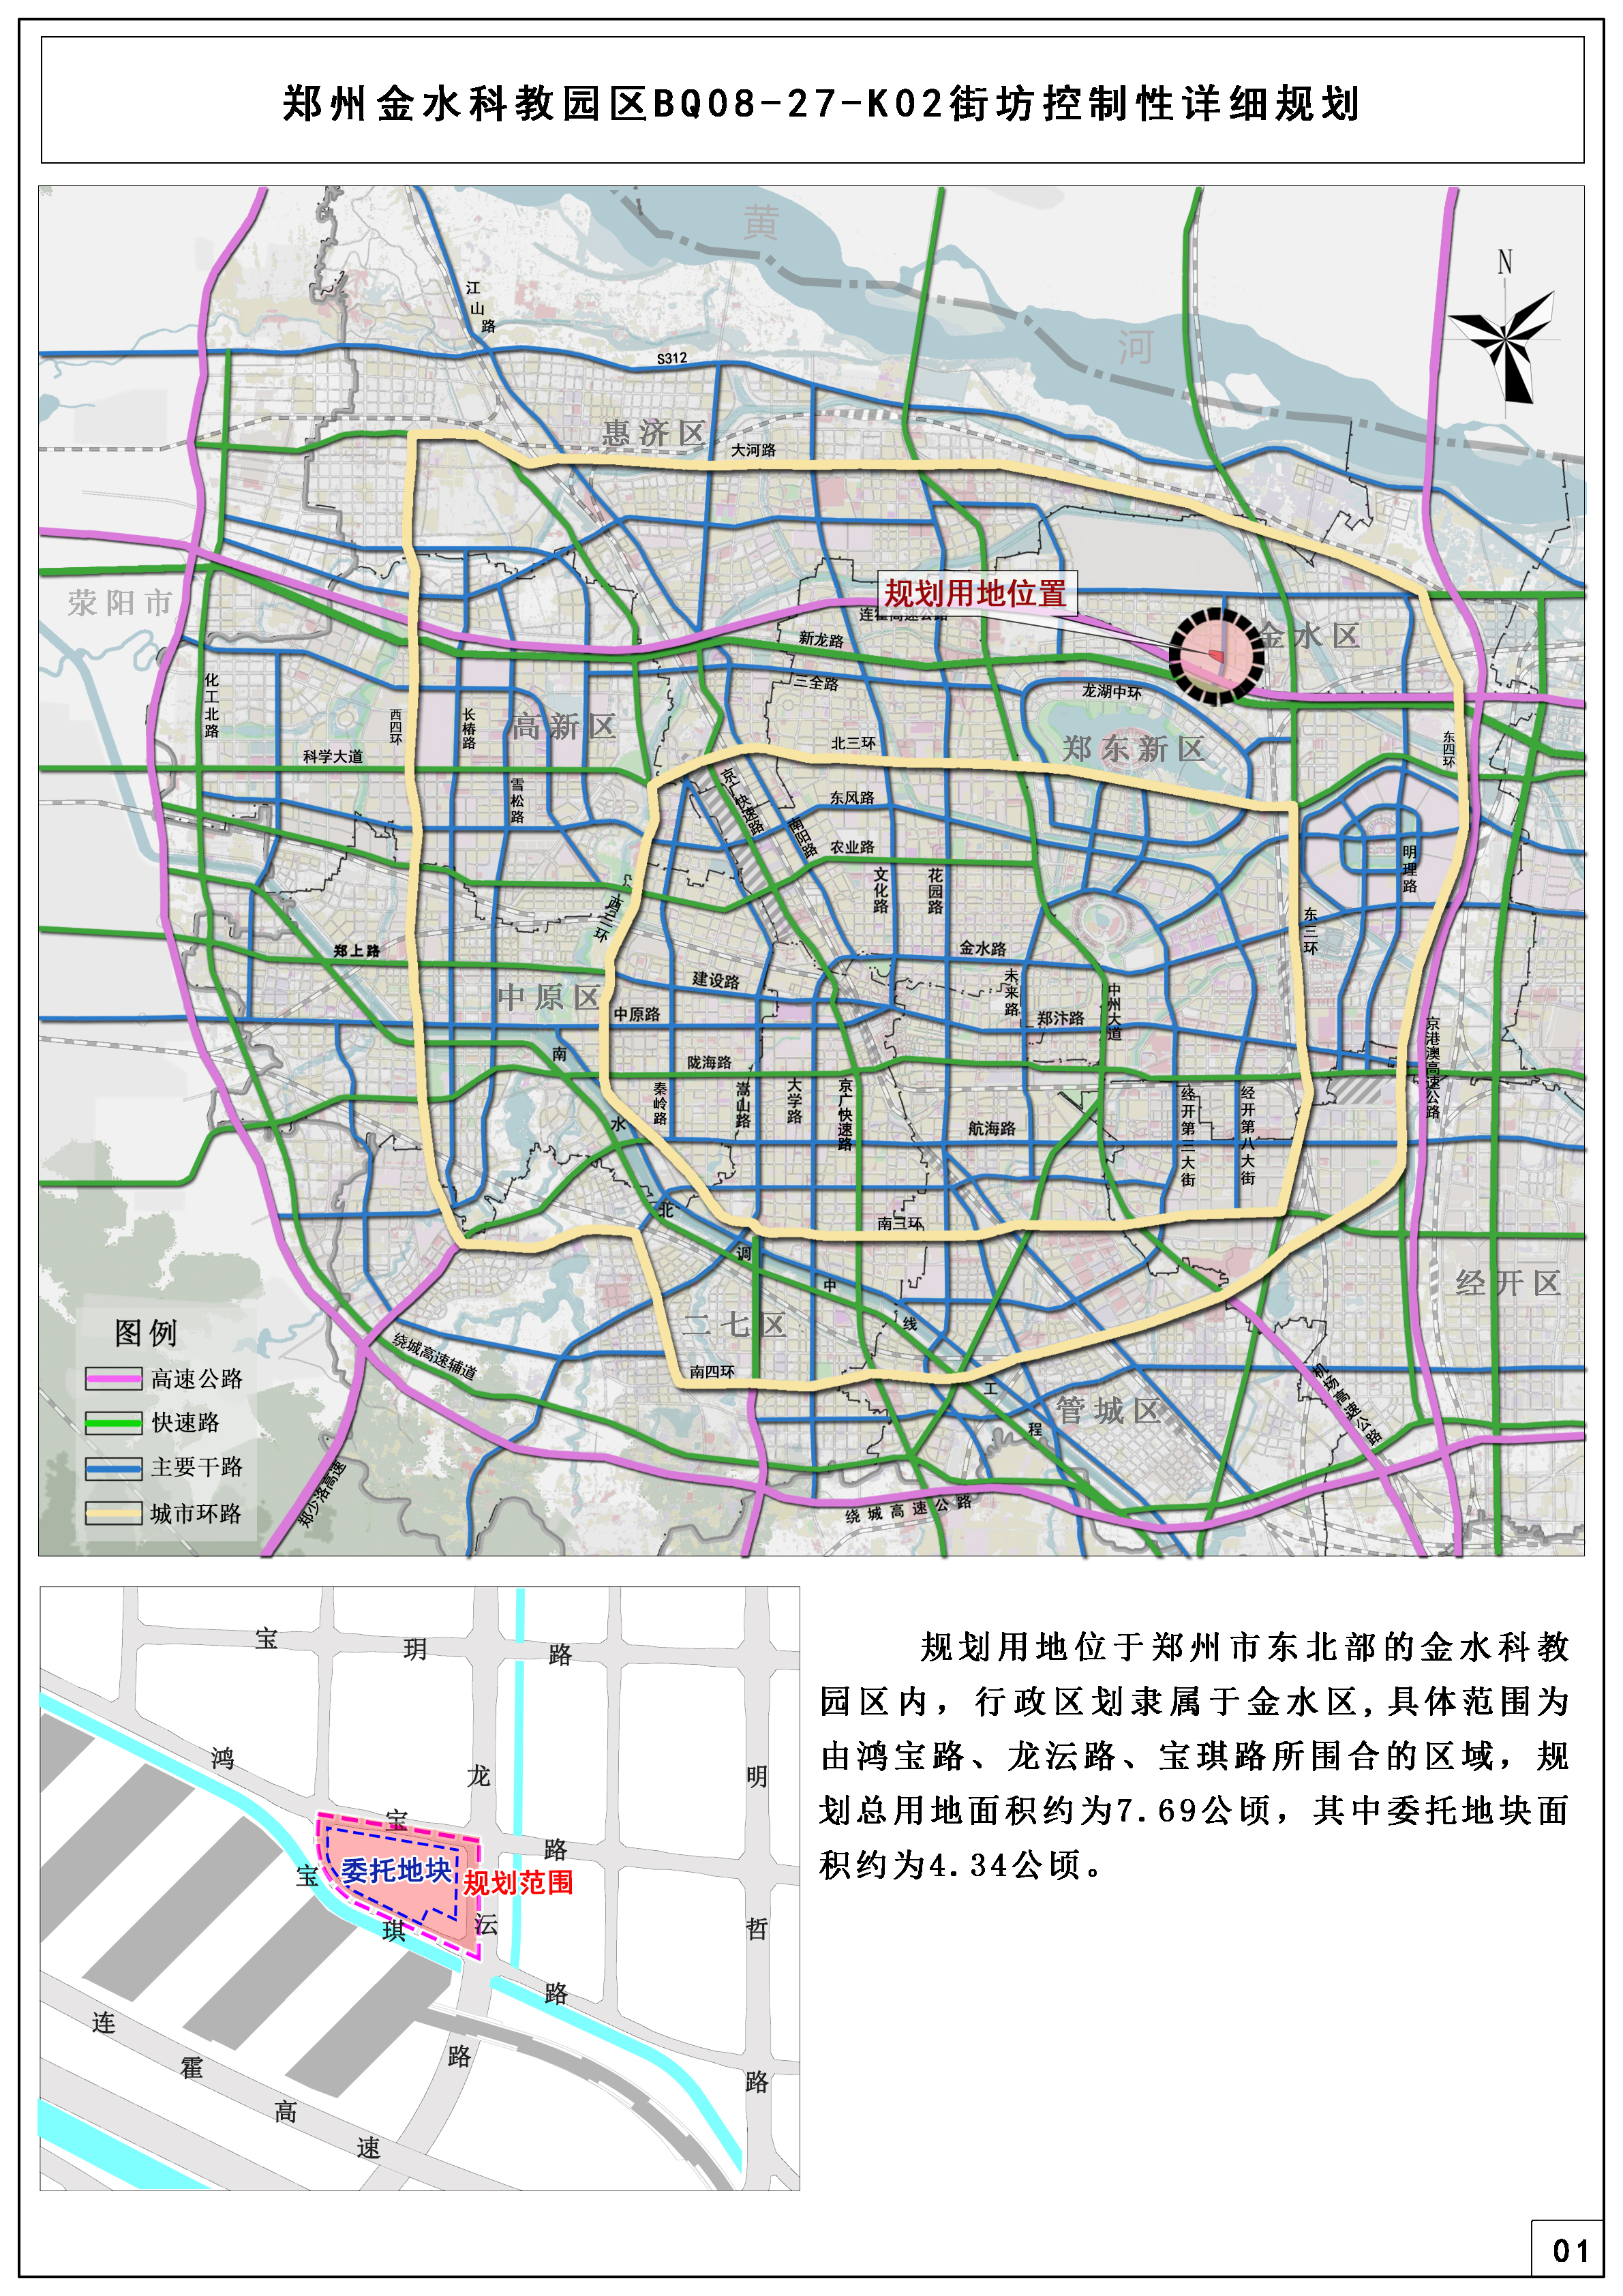 郑州金水科教园区BQ08-27-K02街坊控制性详细规划